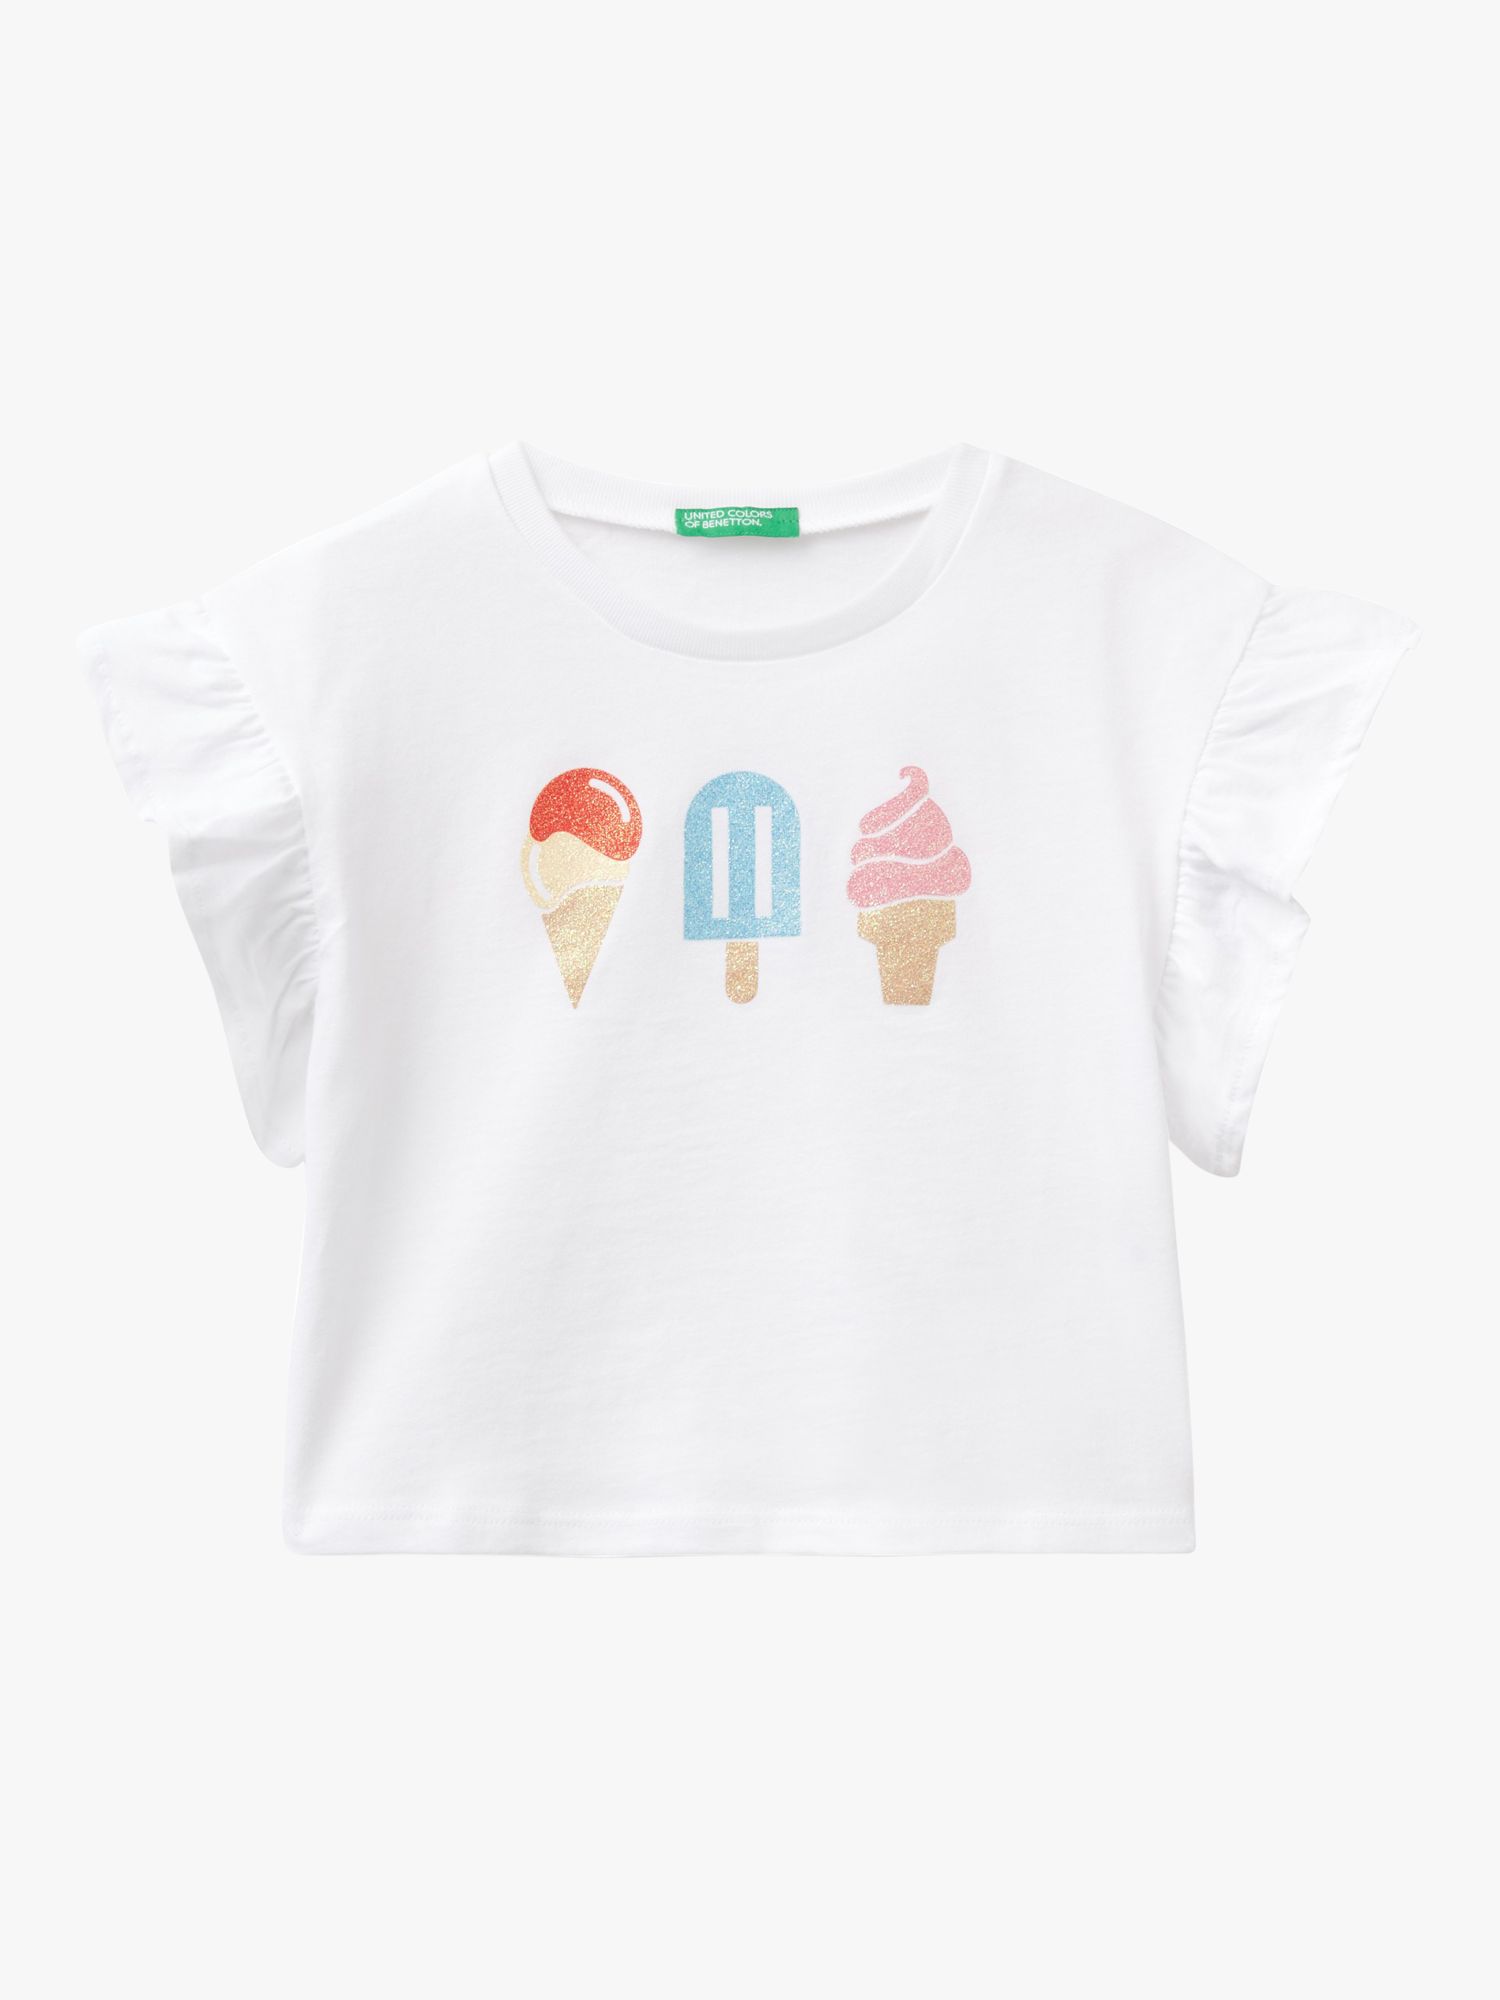 Benetton Kids' Glitter Ice Cream Ruffle Short Sleeve T-Shirt, Optical White, 3-4 years